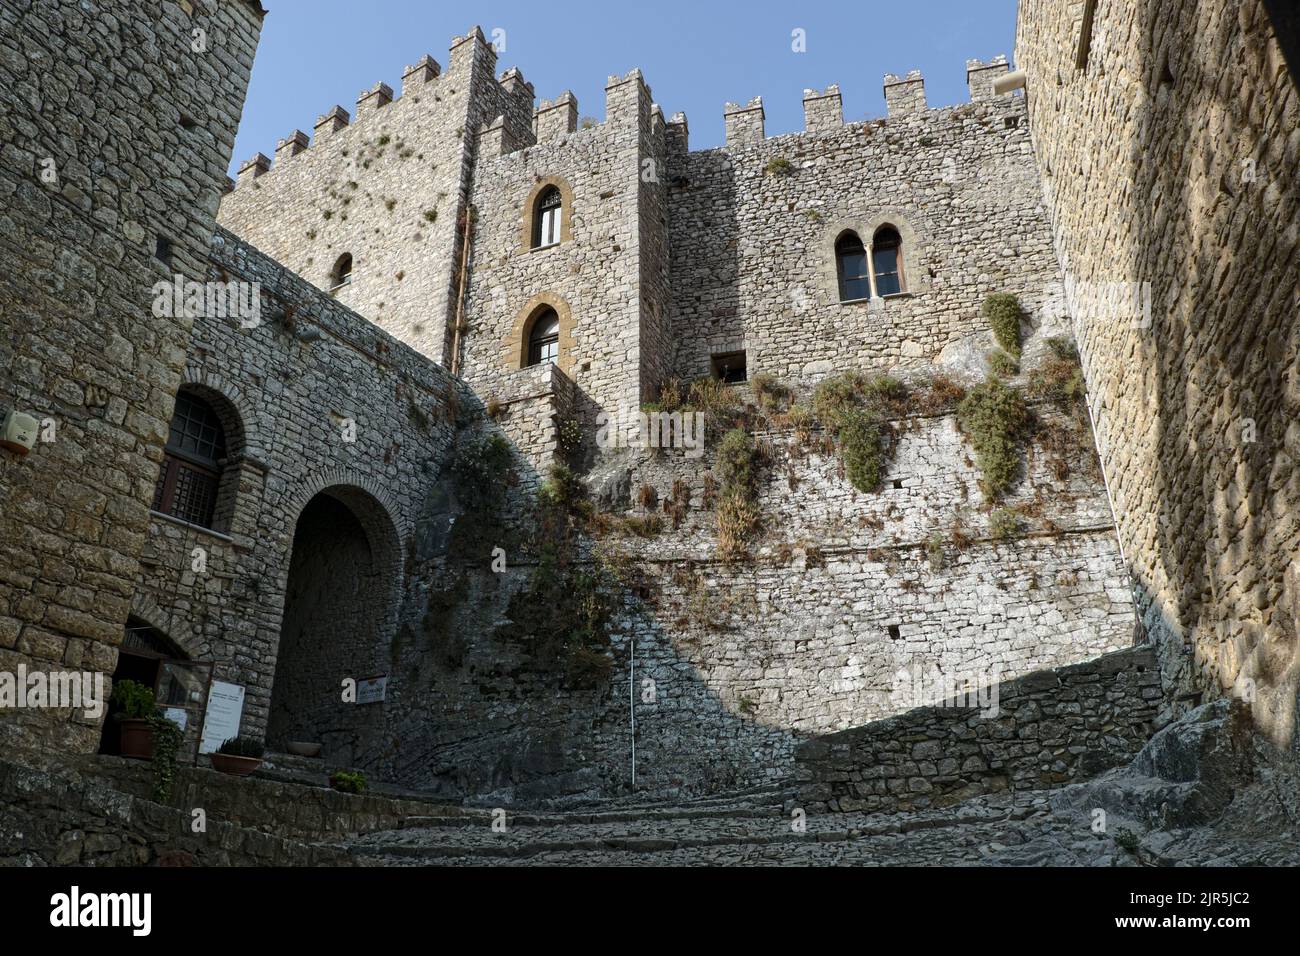 Entrada medieval Castillo de Caccamo en el oeste de Sicilia, Italia Foto de stock